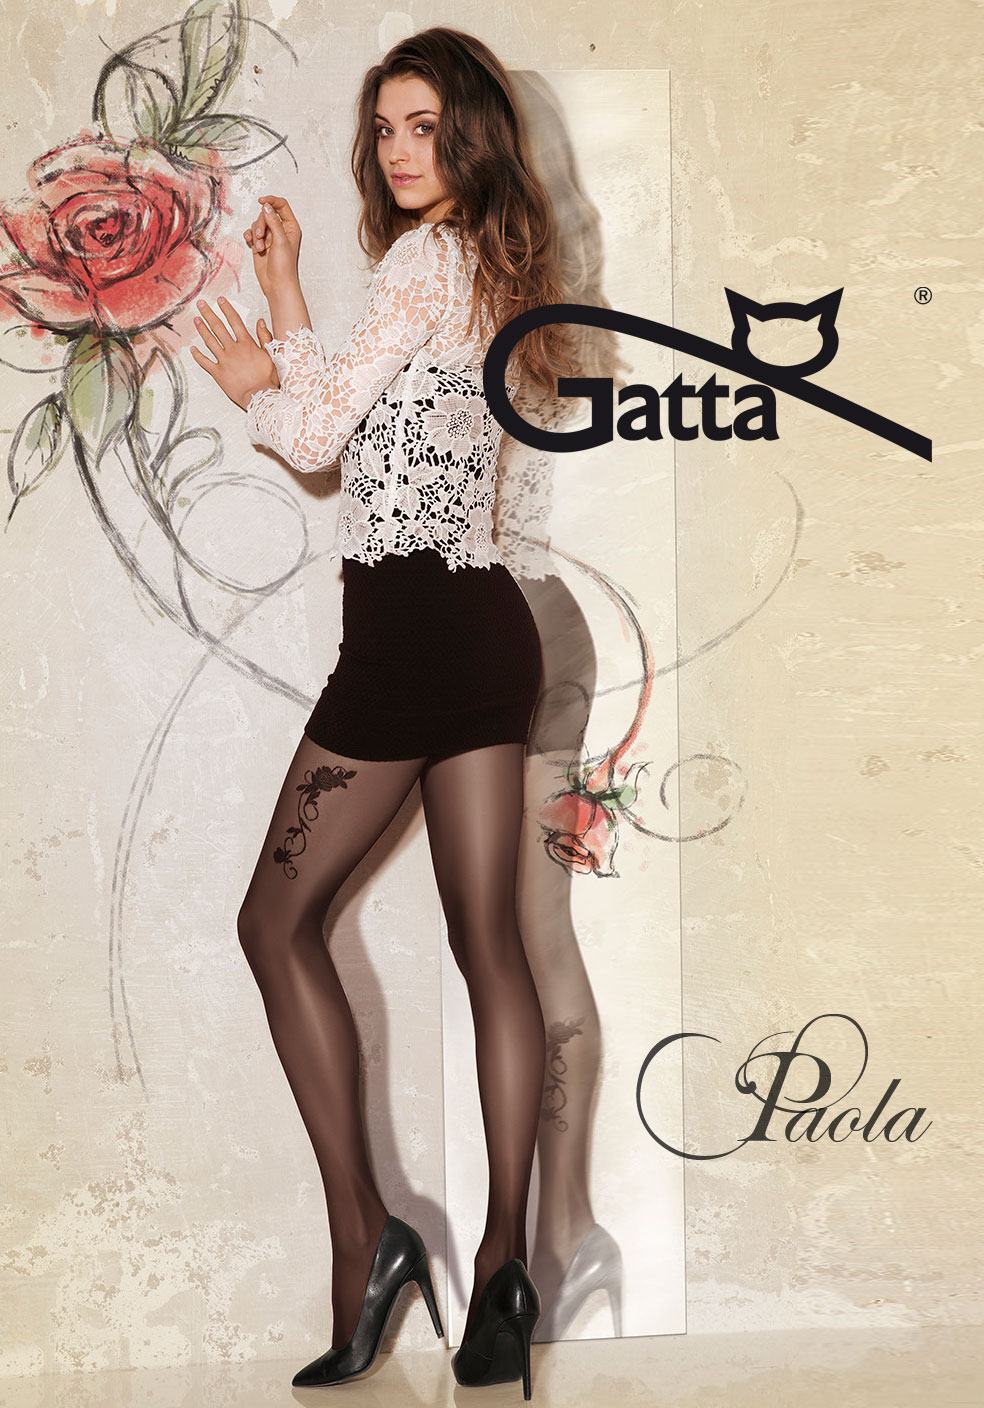 Gatta Paola